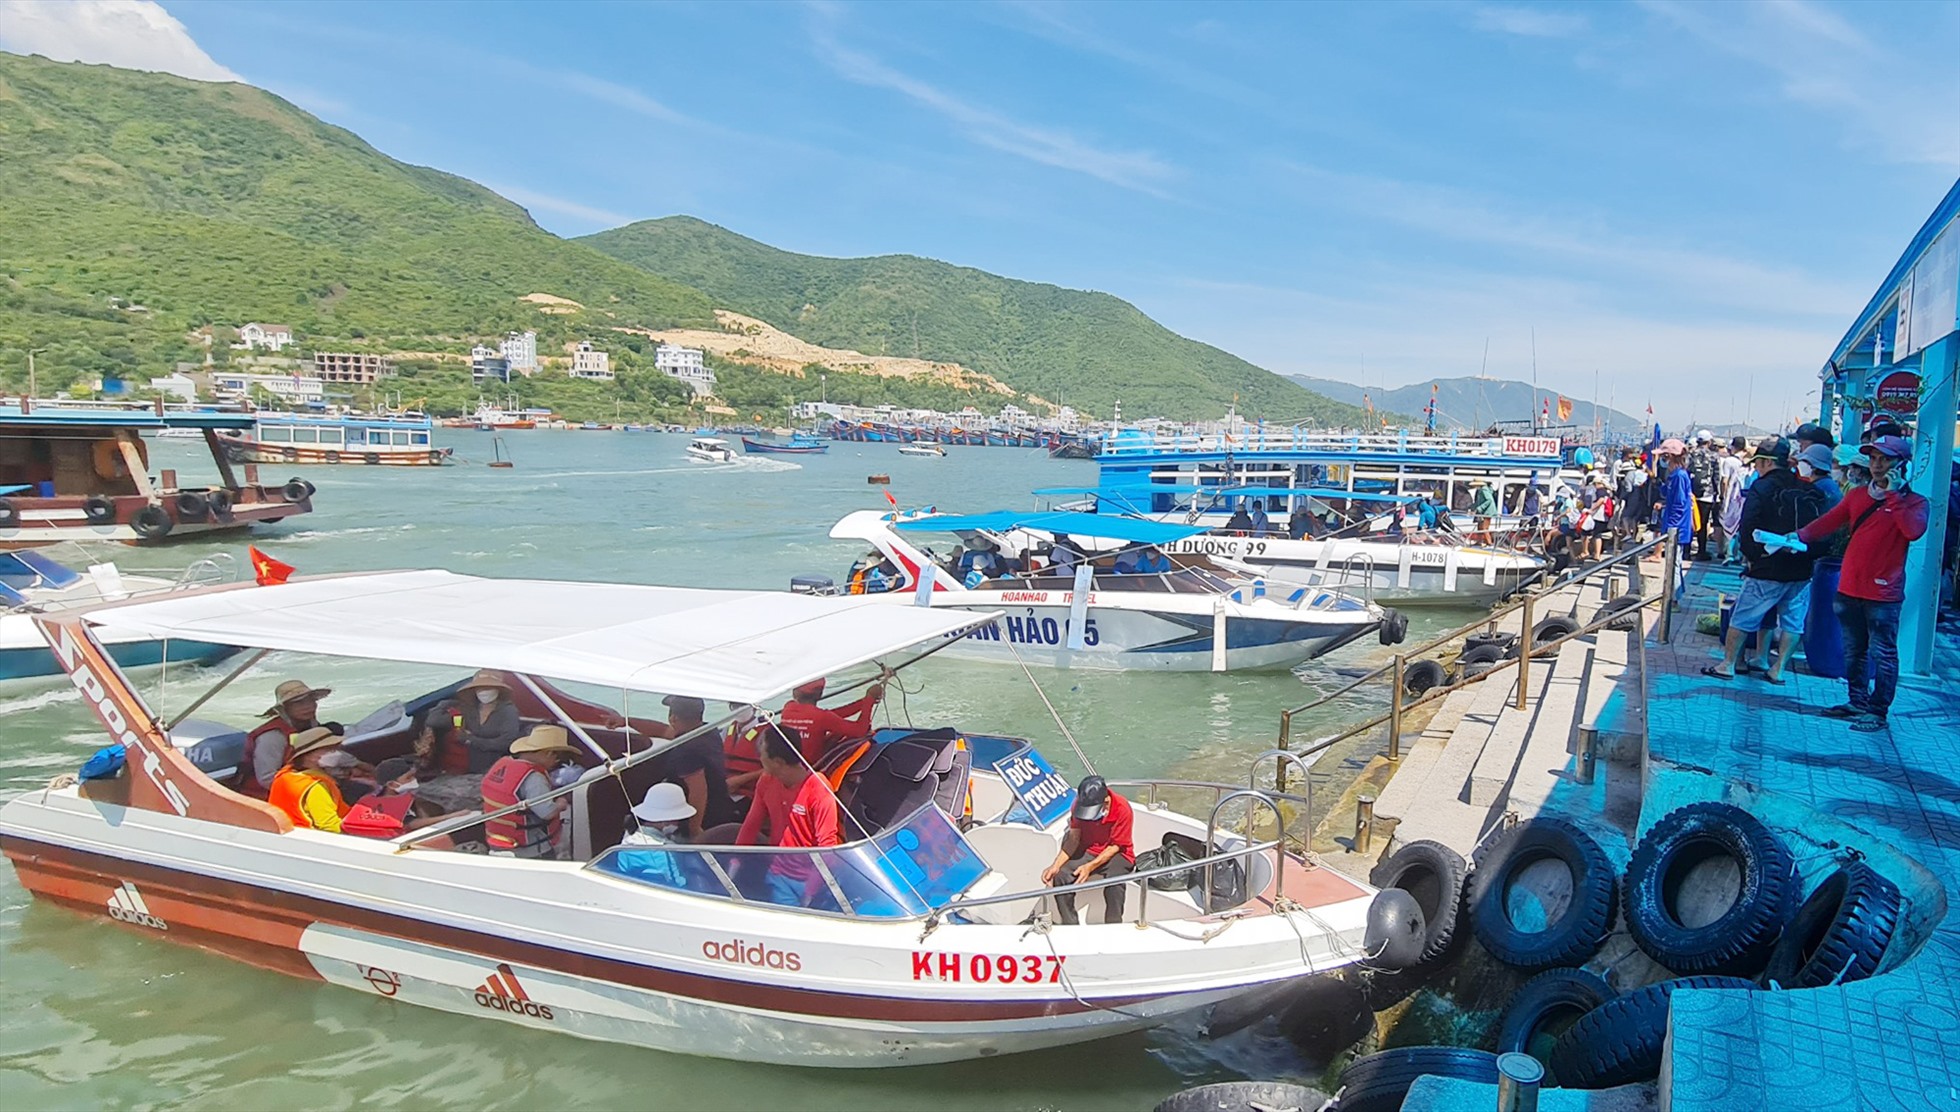 Bến thuyền đưa khách tham quan các đảo ngoài khơi Nha Trang rất đông vào các kỳ lễ nên giá các dịch vụ hầu hết đều cao hơn so với ngày bình thường.